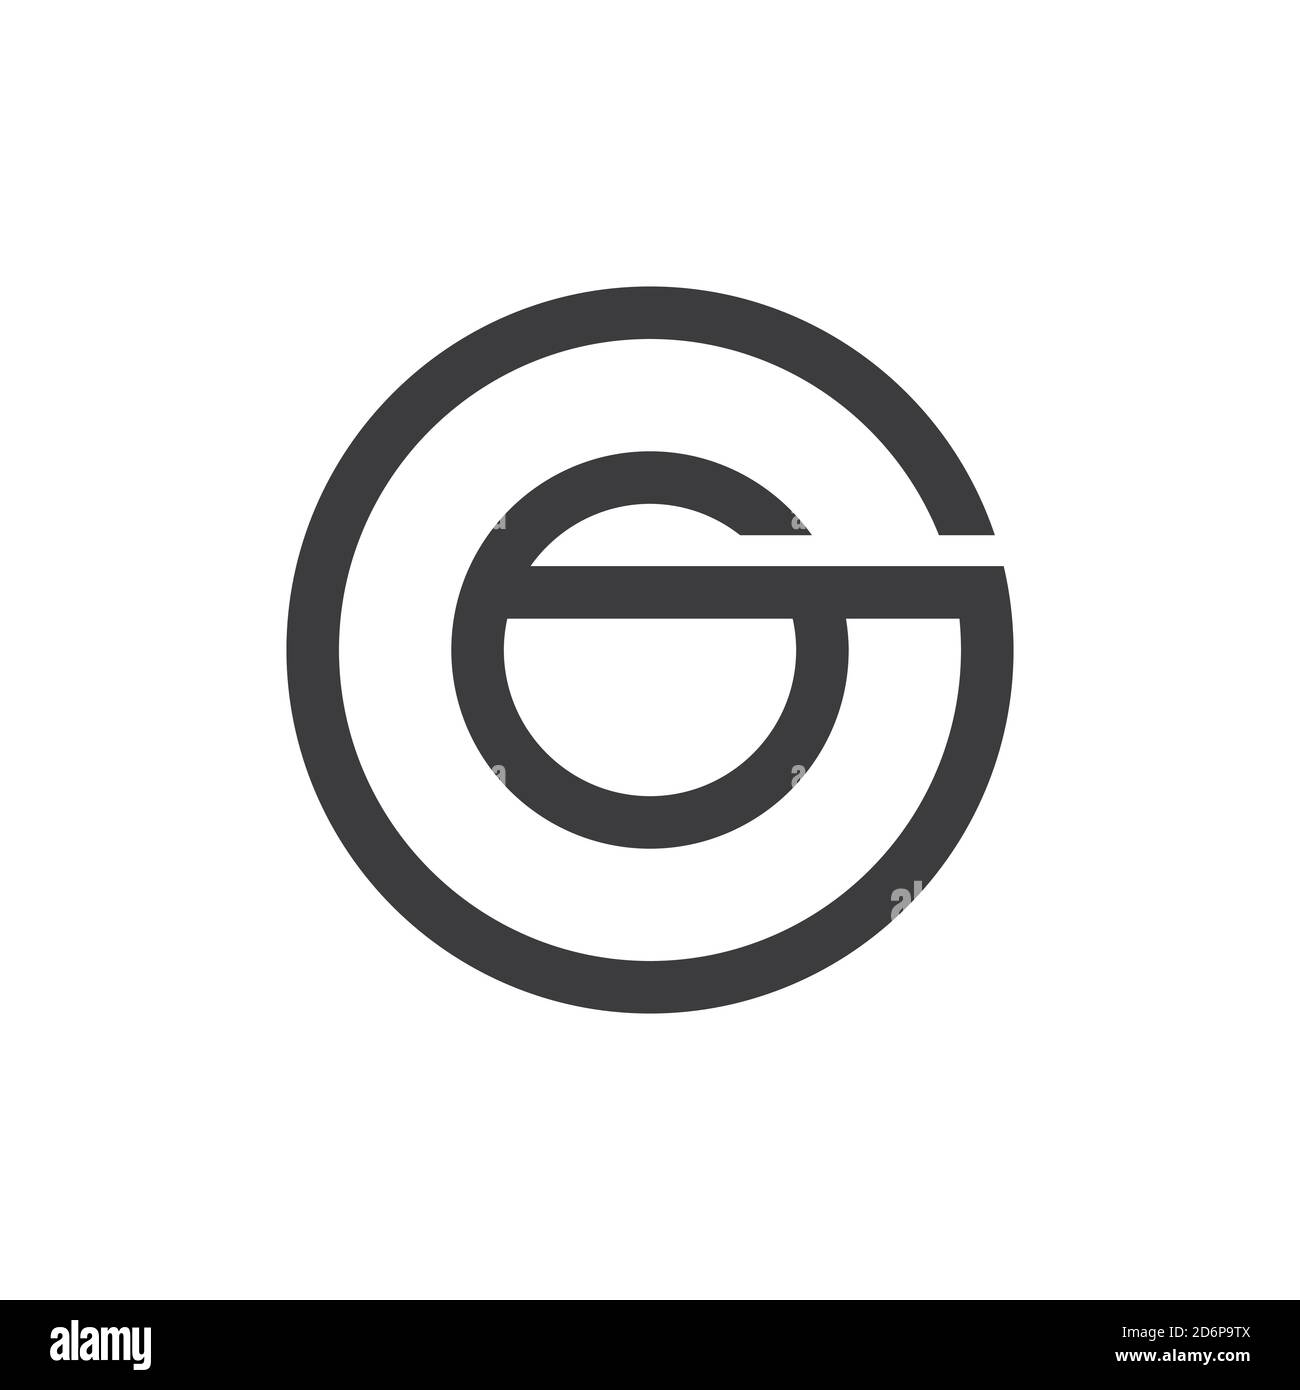 File:GO Logo.svg - Wikipedia